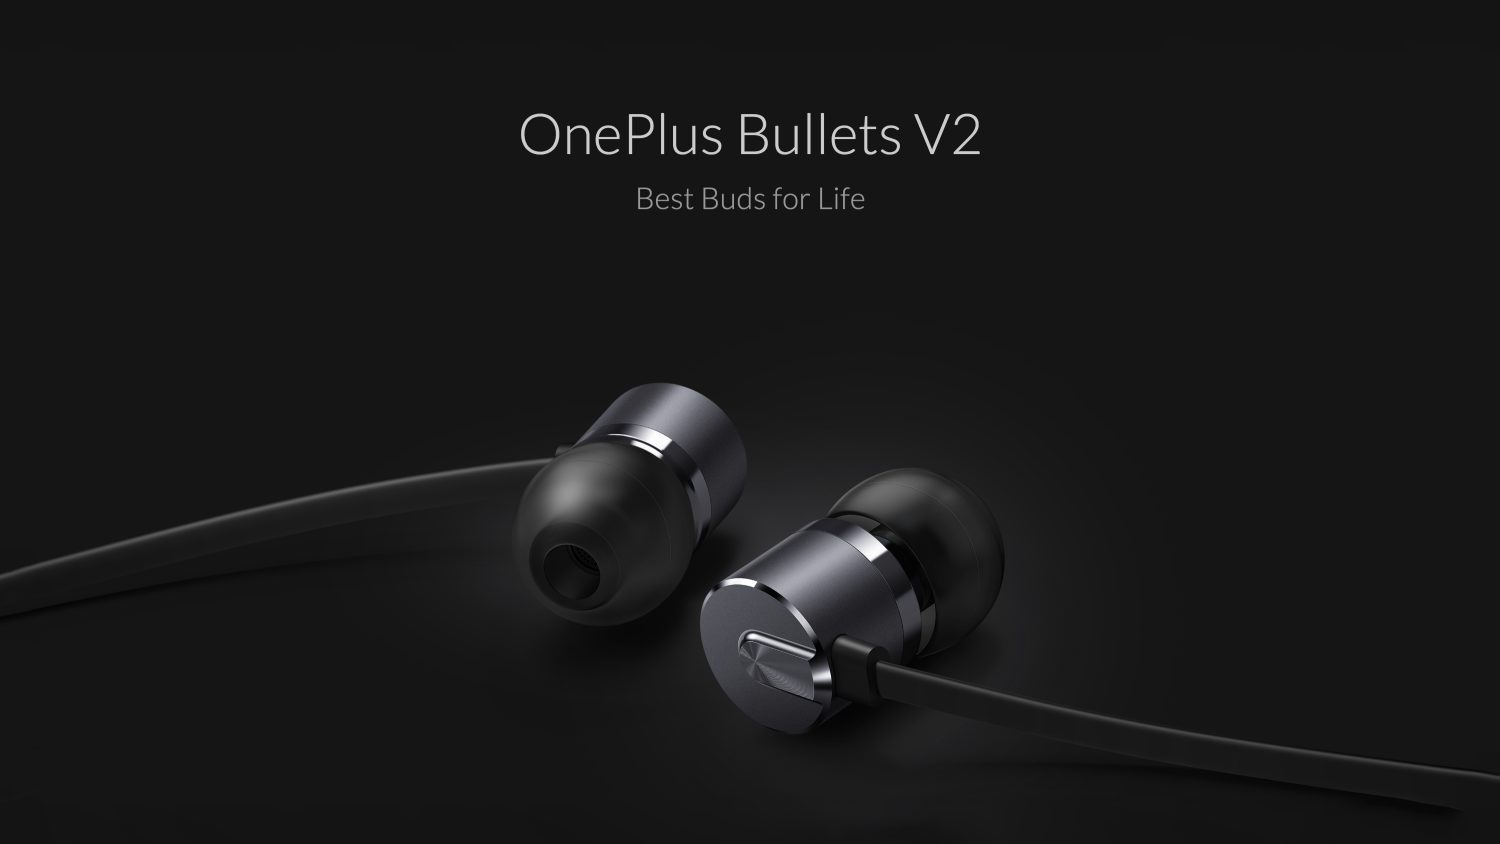 OnePlus Bullets V2 earphones